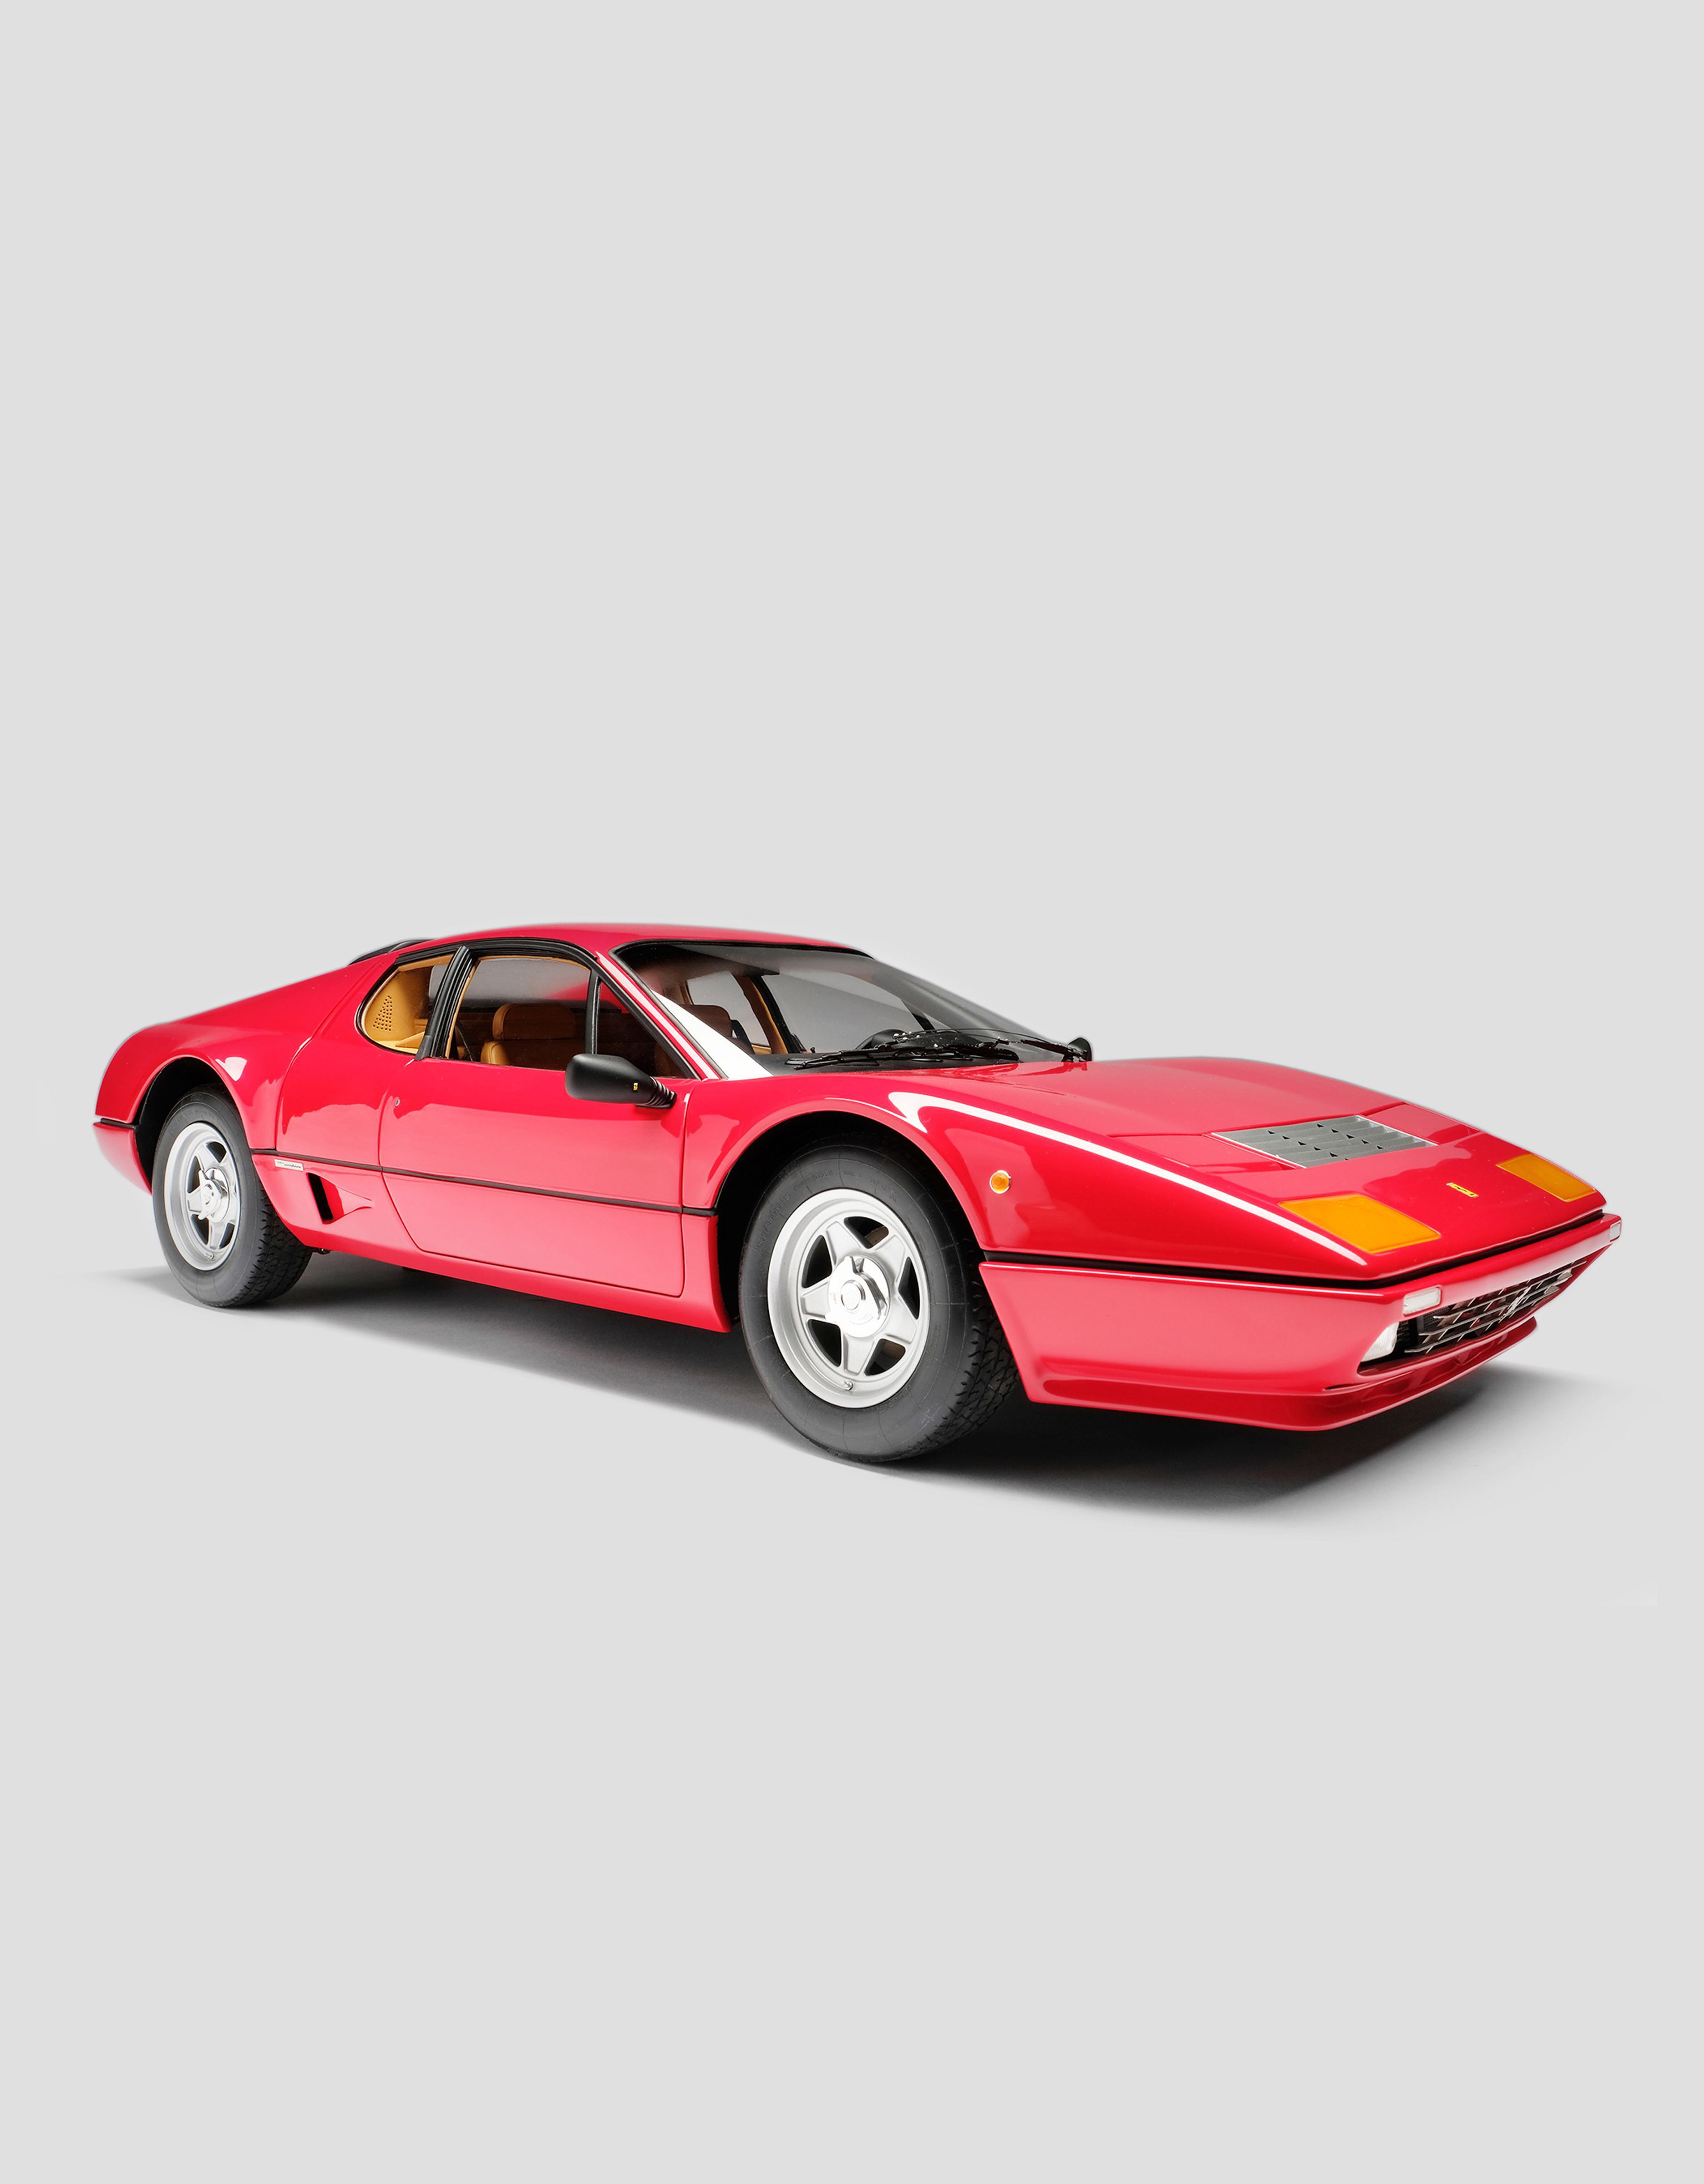 Ferrari 法拉利 BB 512i 1:8 模型车 红色 L7585f